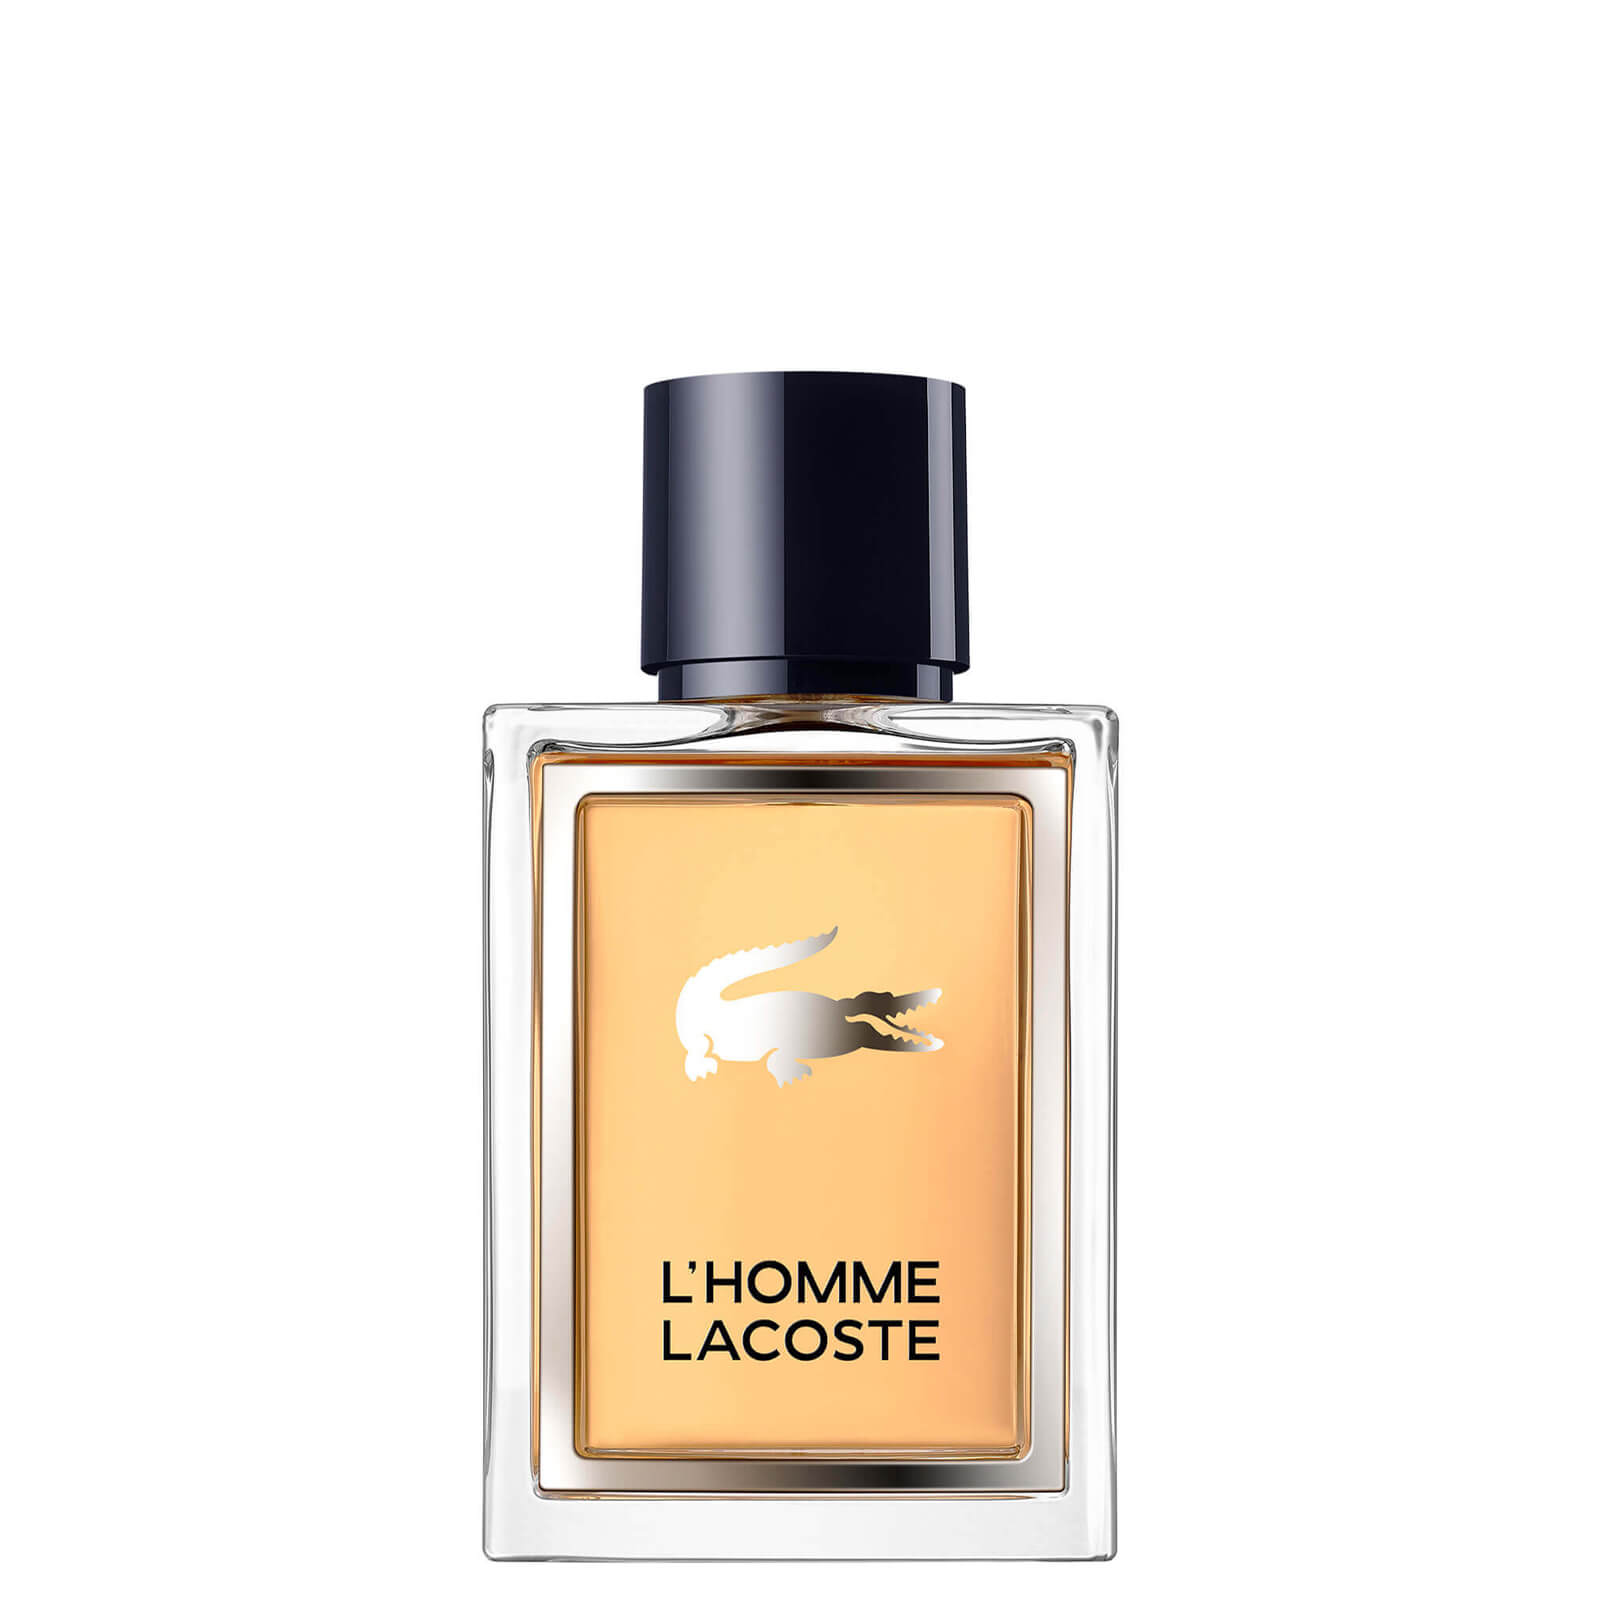 Photos - Men's Fragrance Lacoste L'Homme Eau de Toilette 50ml 99240004700 